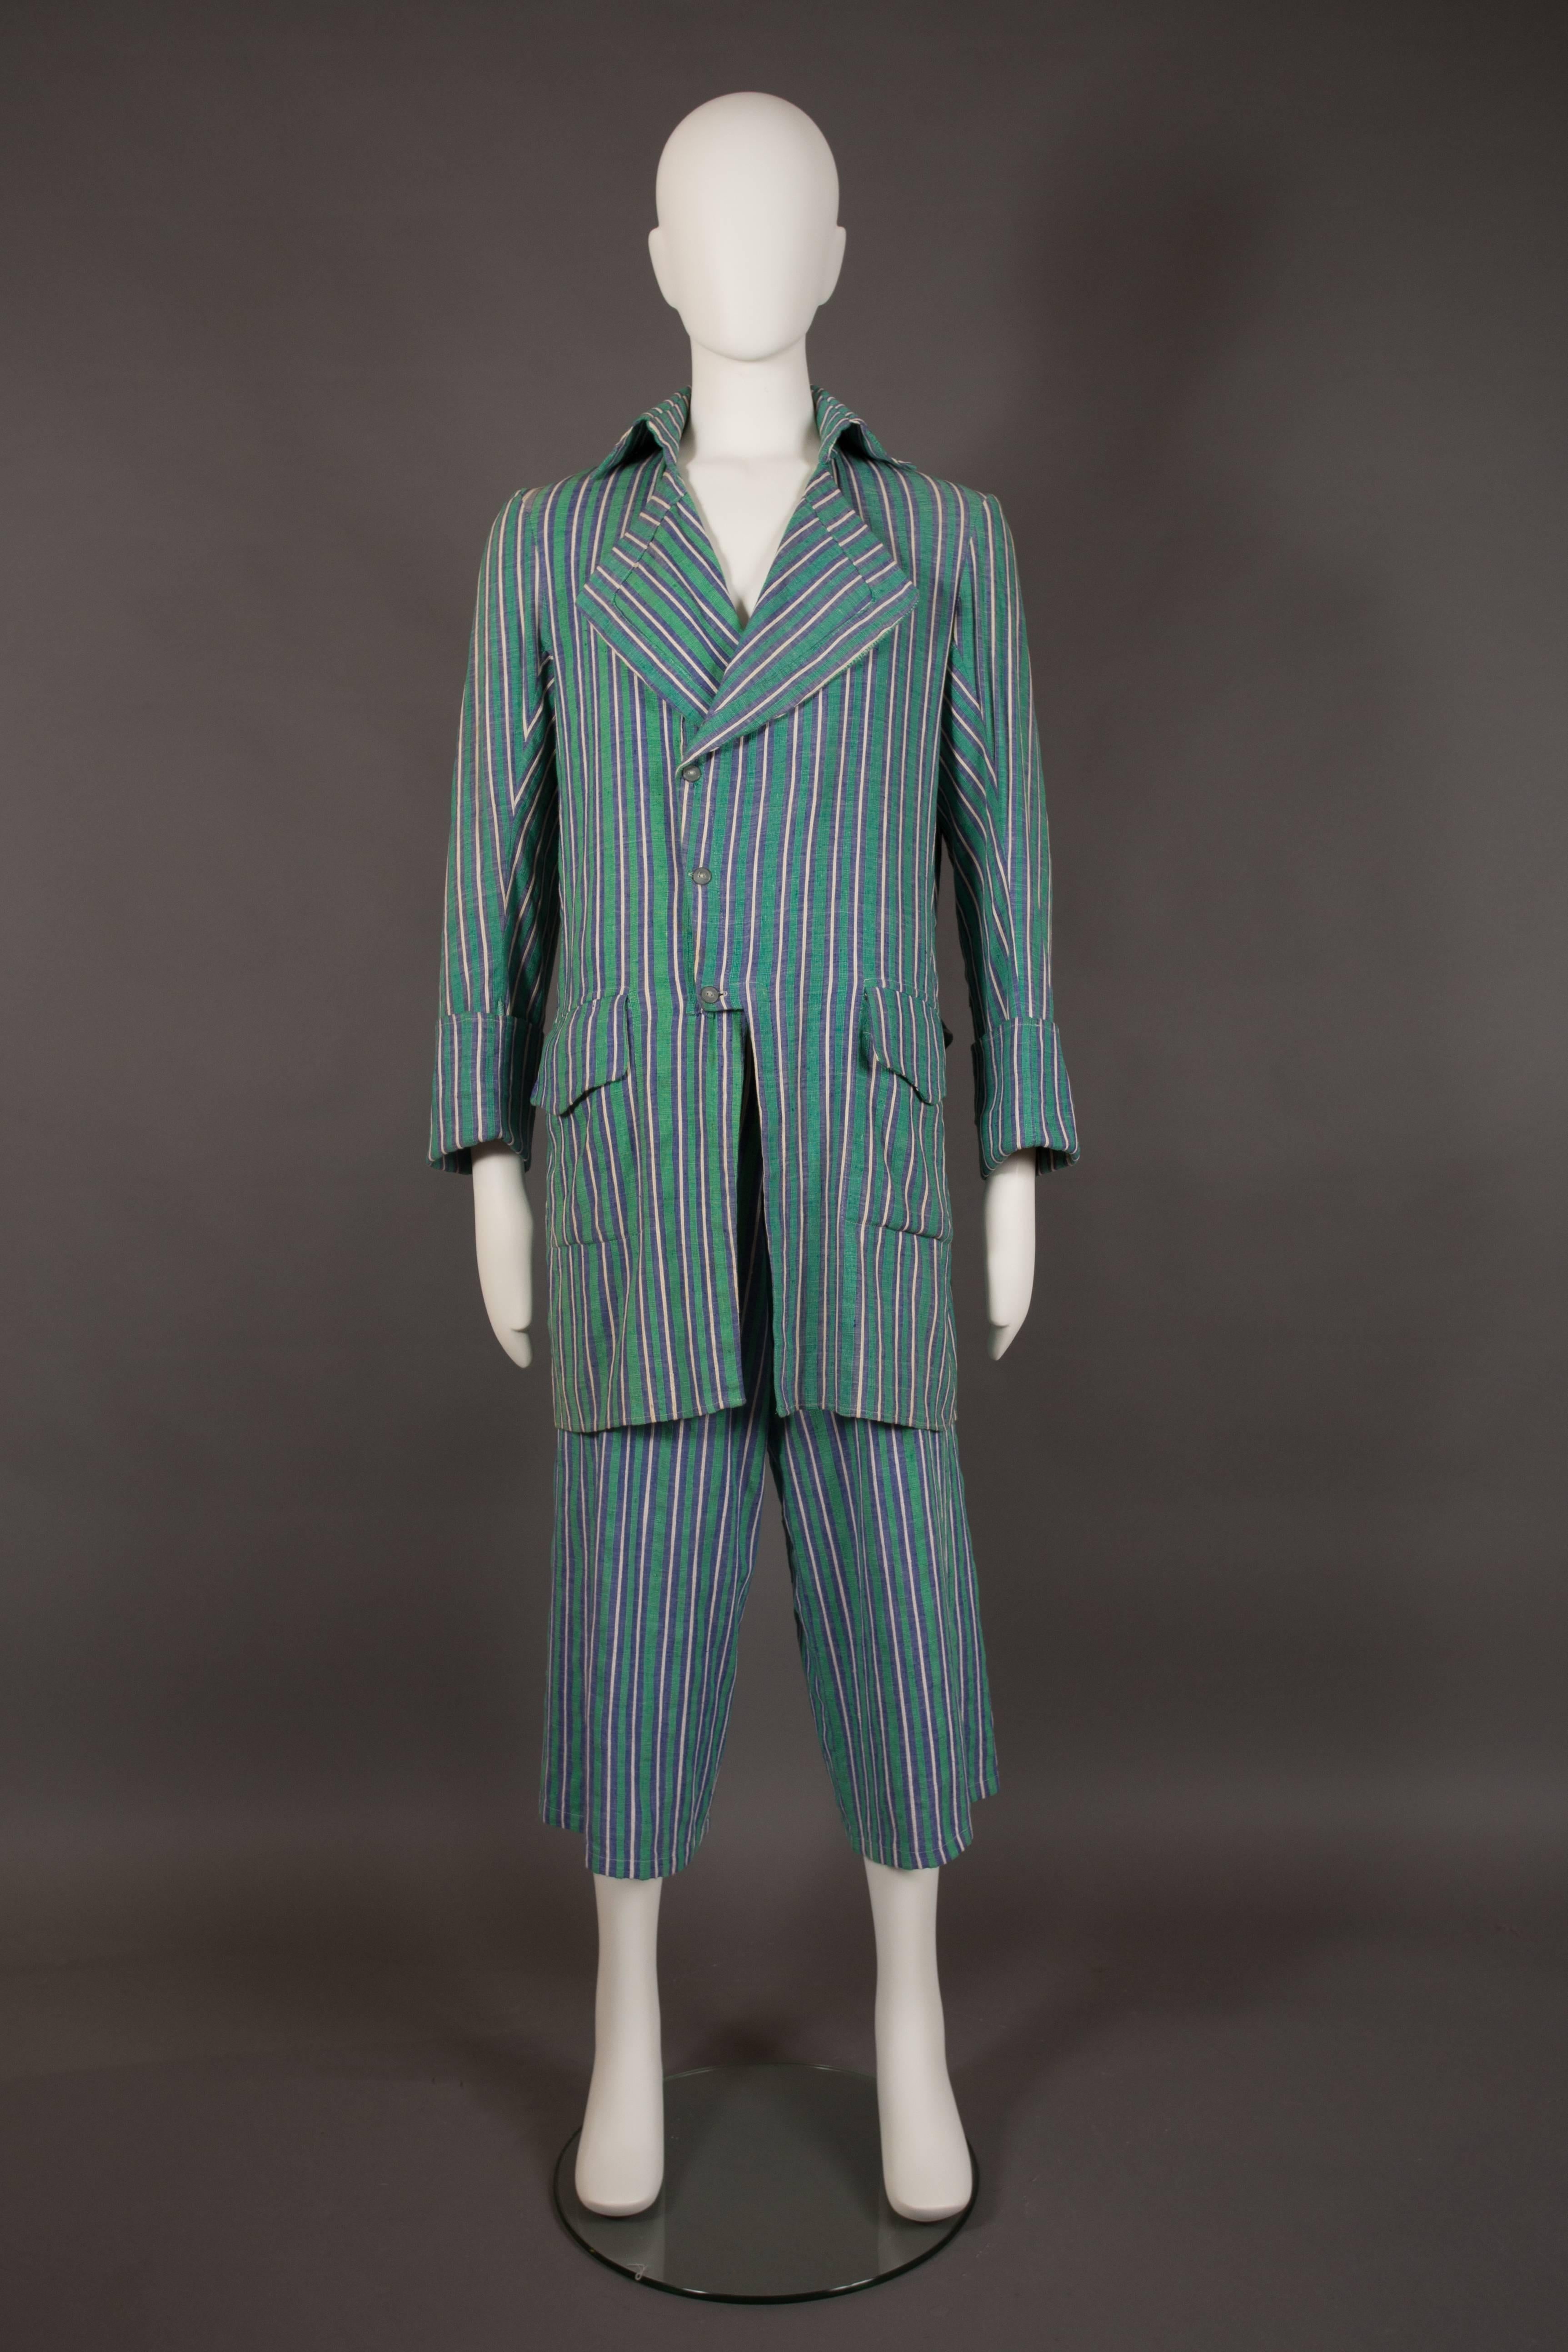 Un rare tailleur pantalon de Worlds End, conçu par Vivienne Westwood et Malcolm Mclaren, vers 1981.

Design/One inspiré des pirates, coton rayé bleu, blanc et vert, deux poches à rabat sur le devant, boutons en métal argenté sur tout le corps,